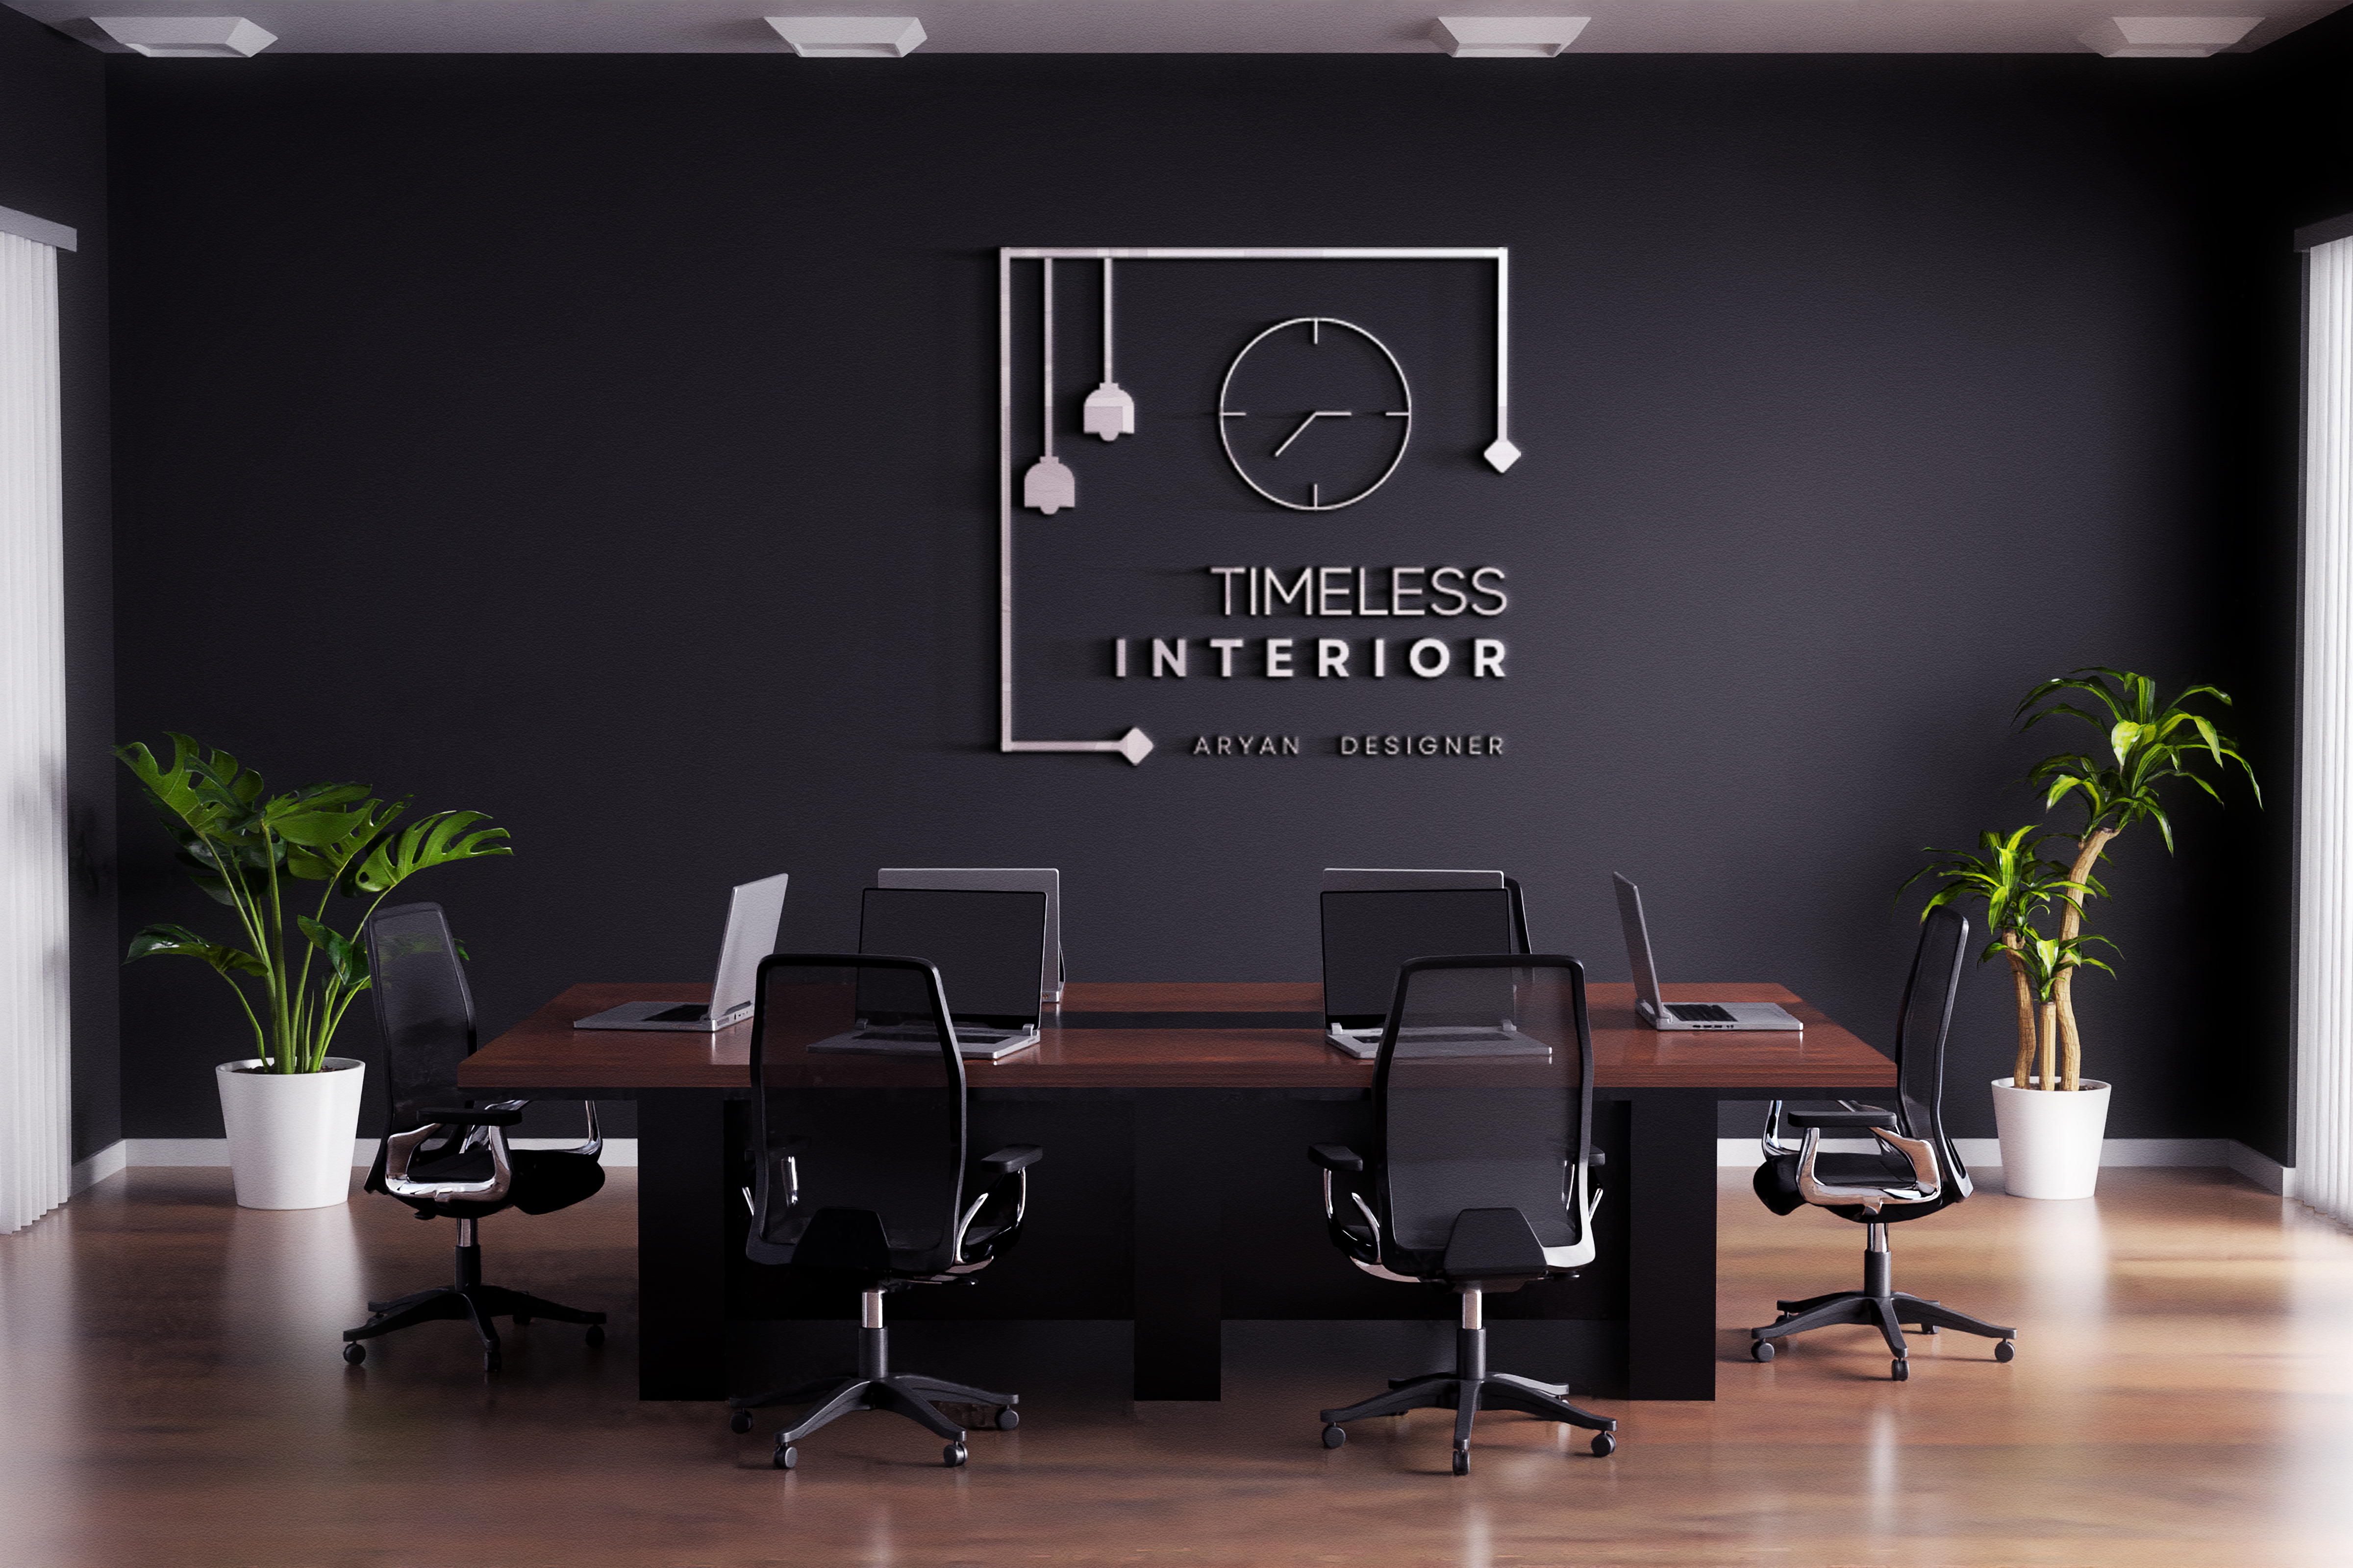 Make creative unique modern minimalist interior logo desgin for business